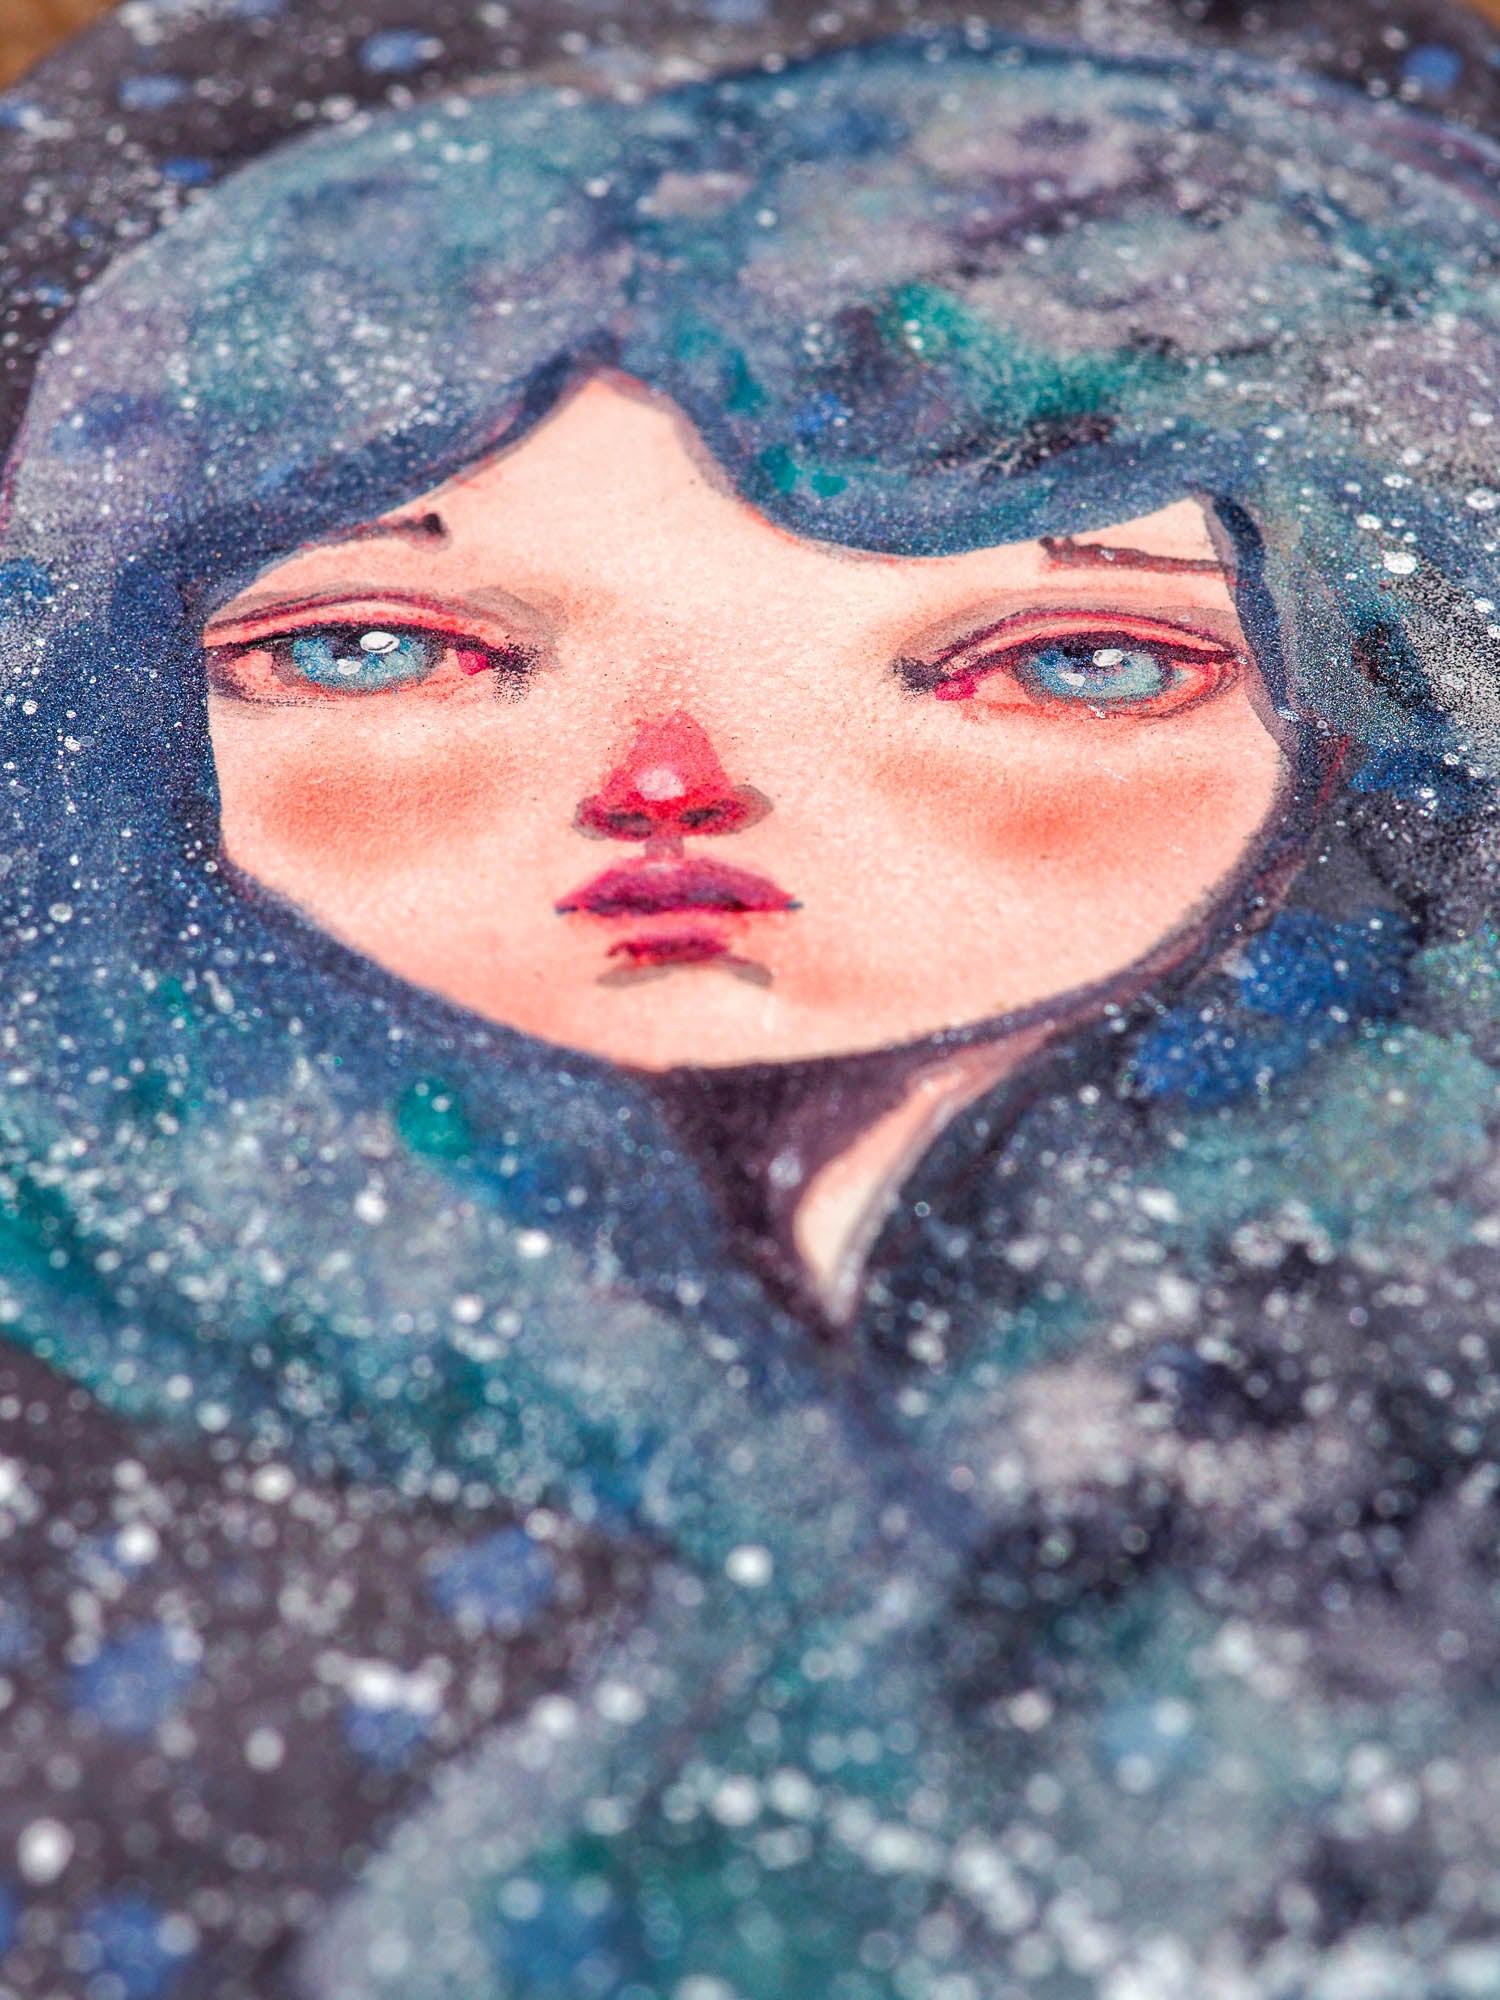 ANDROMEDA - One of Danita's deep space inspired watercolor portraits, Original Art by Danita Art